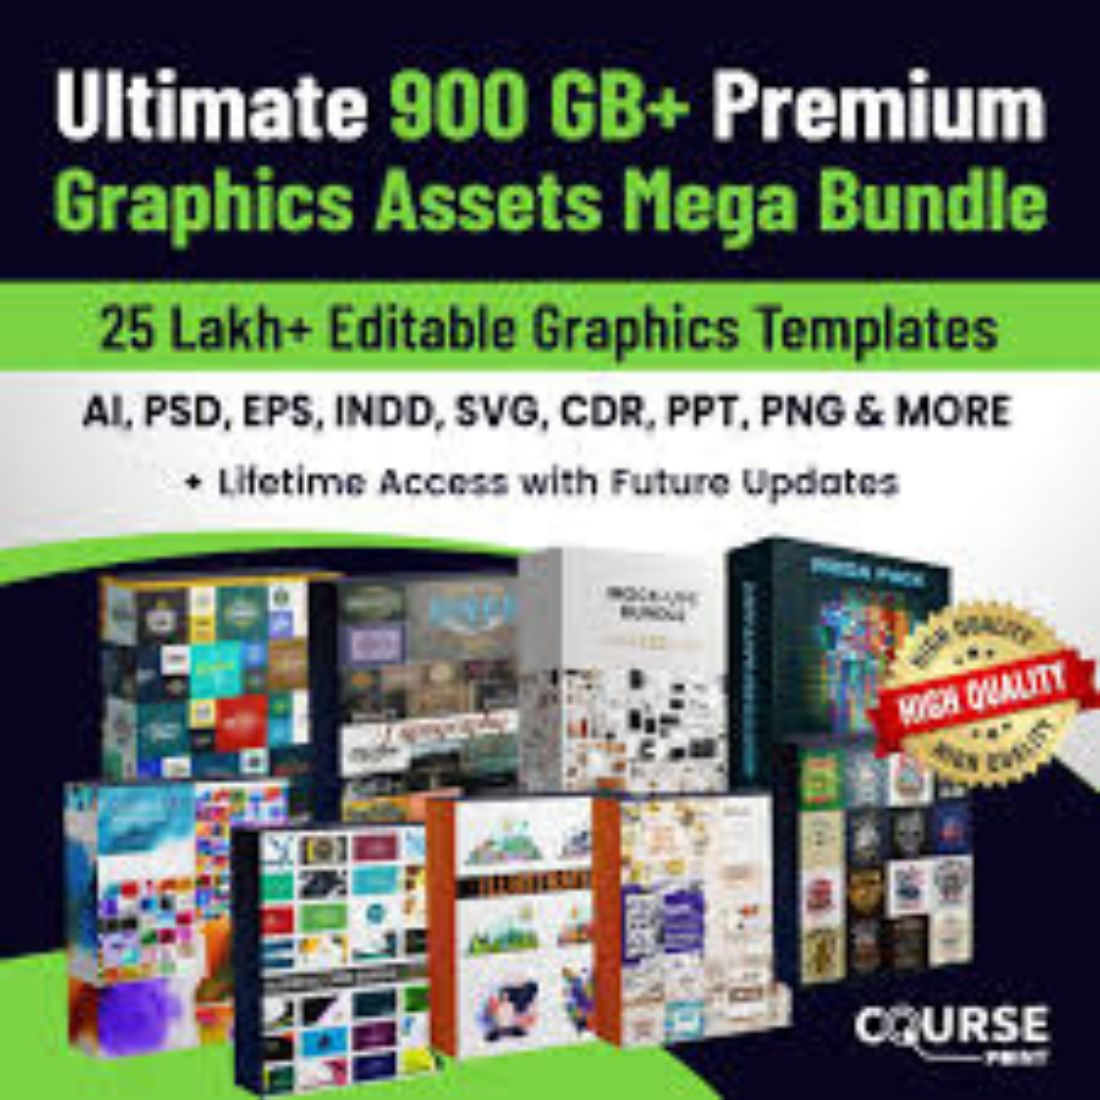 Ultimate 900GB+ Premium Graphics Assets (Templates) Mega Bundle – 25 Lakh+ Editable Graphics Suite cover image.